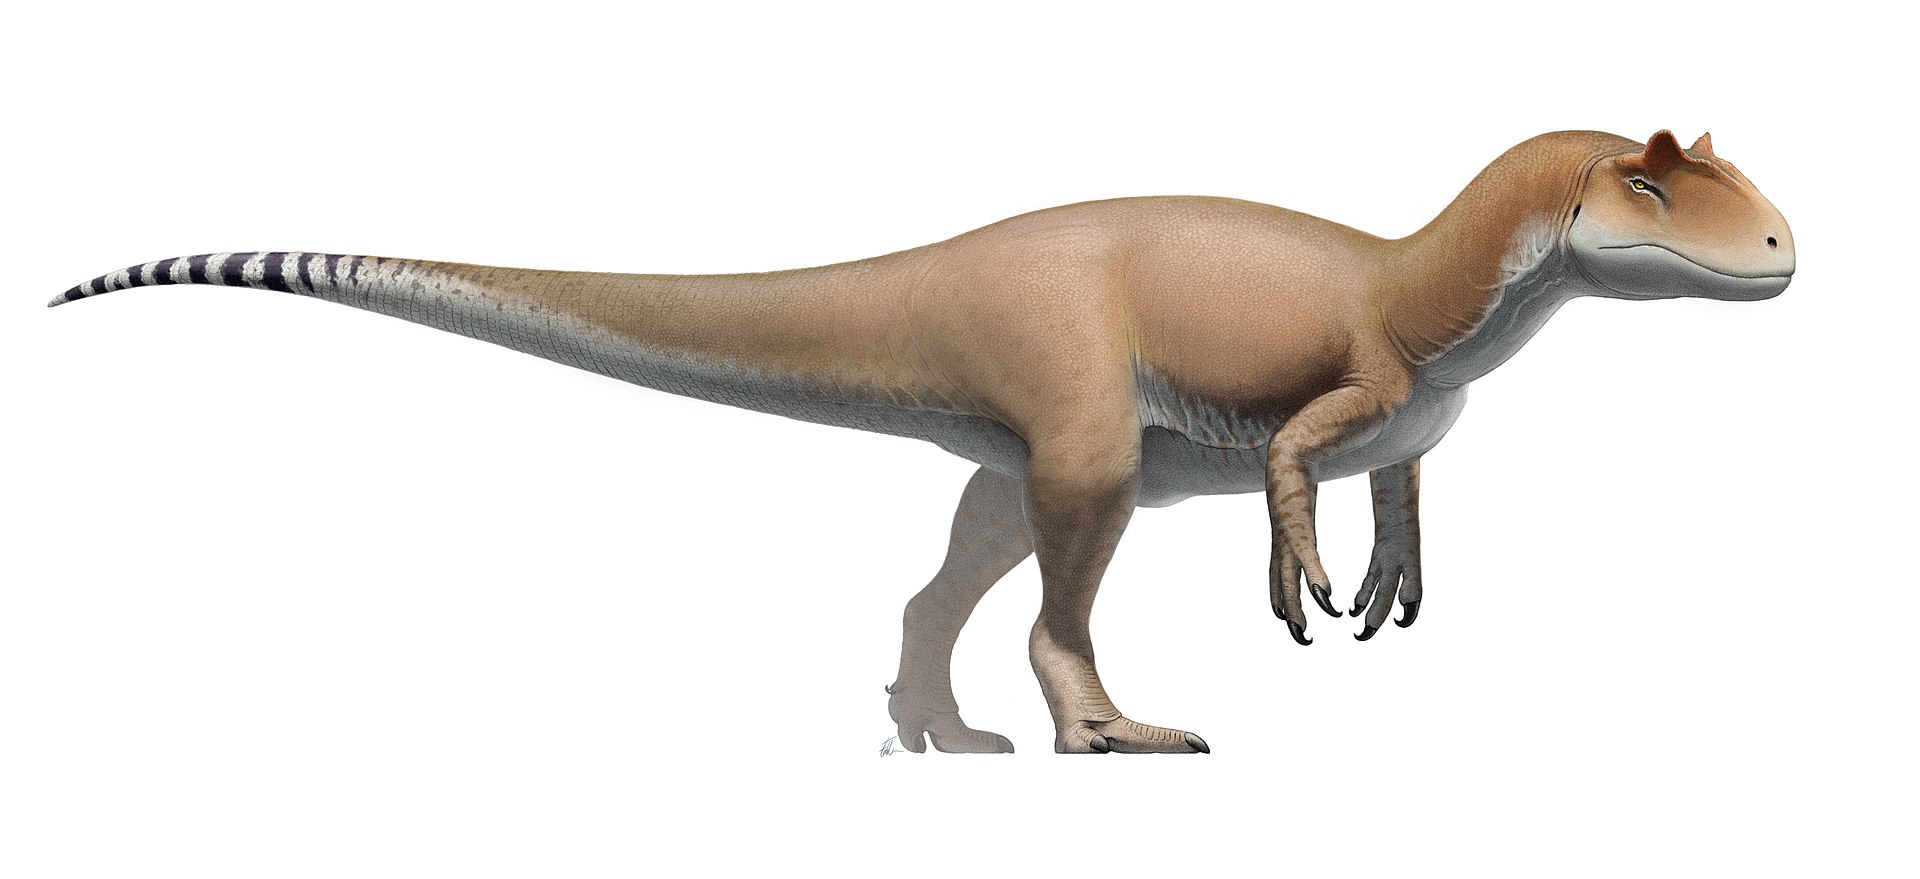 Moderní rekonstrukce přibližného vzezření druhu Allosaurus fragilis. Na první pohled zaujmou relativně silné a dlouhé přední končetiny s mohutnými drápy i výrazné zašpičatělé rohy nad očima. Alosaurus bývá někdy označován za „tygra doby jurské“, což 